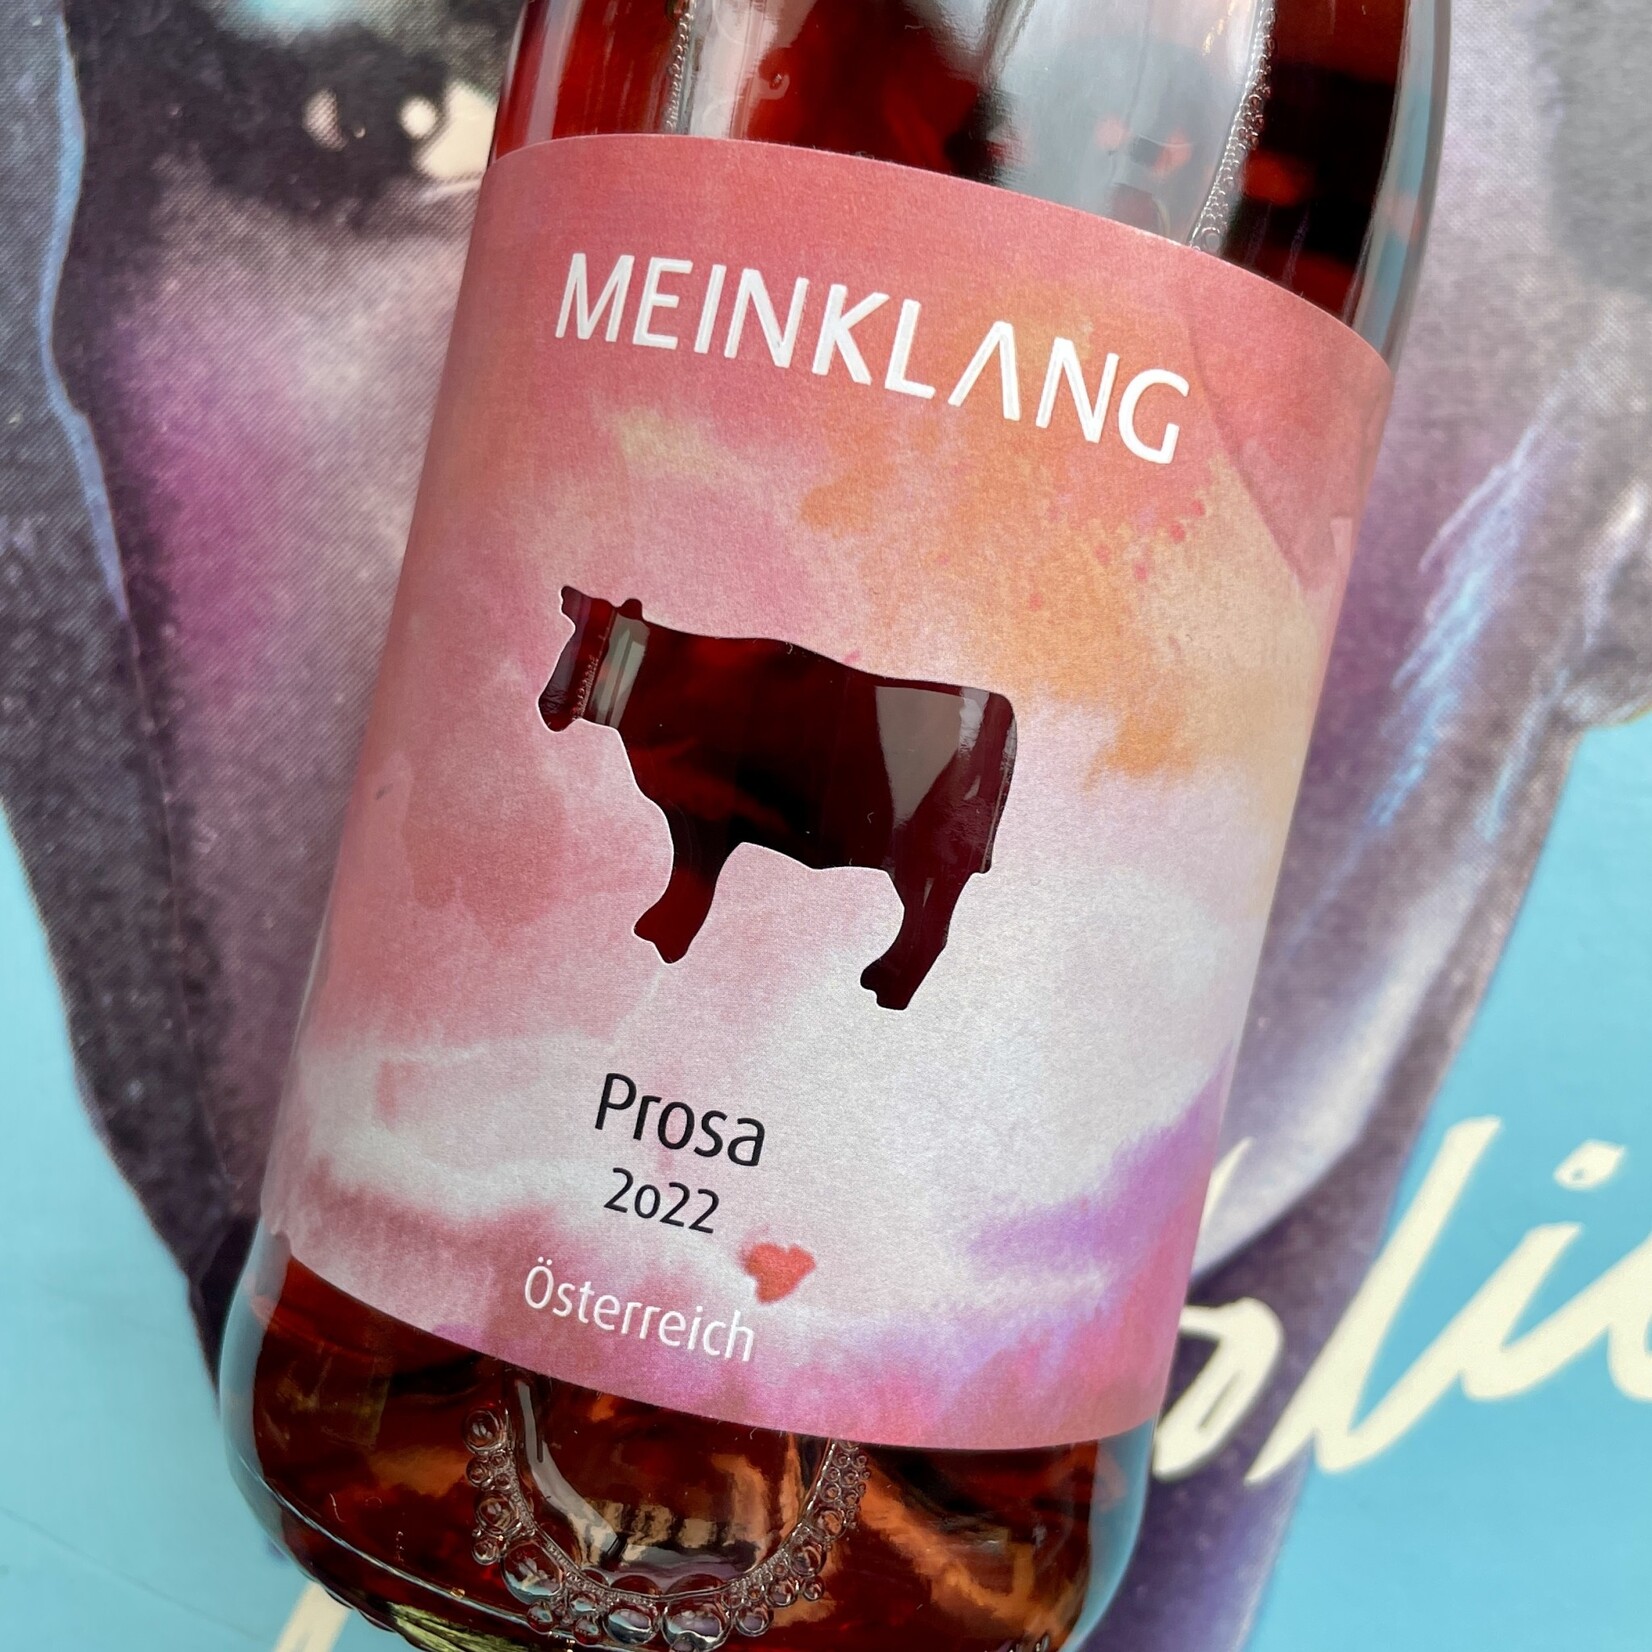 Austria 2022 Meinklang “Prosa” Pinot Noir Rose Frizzante